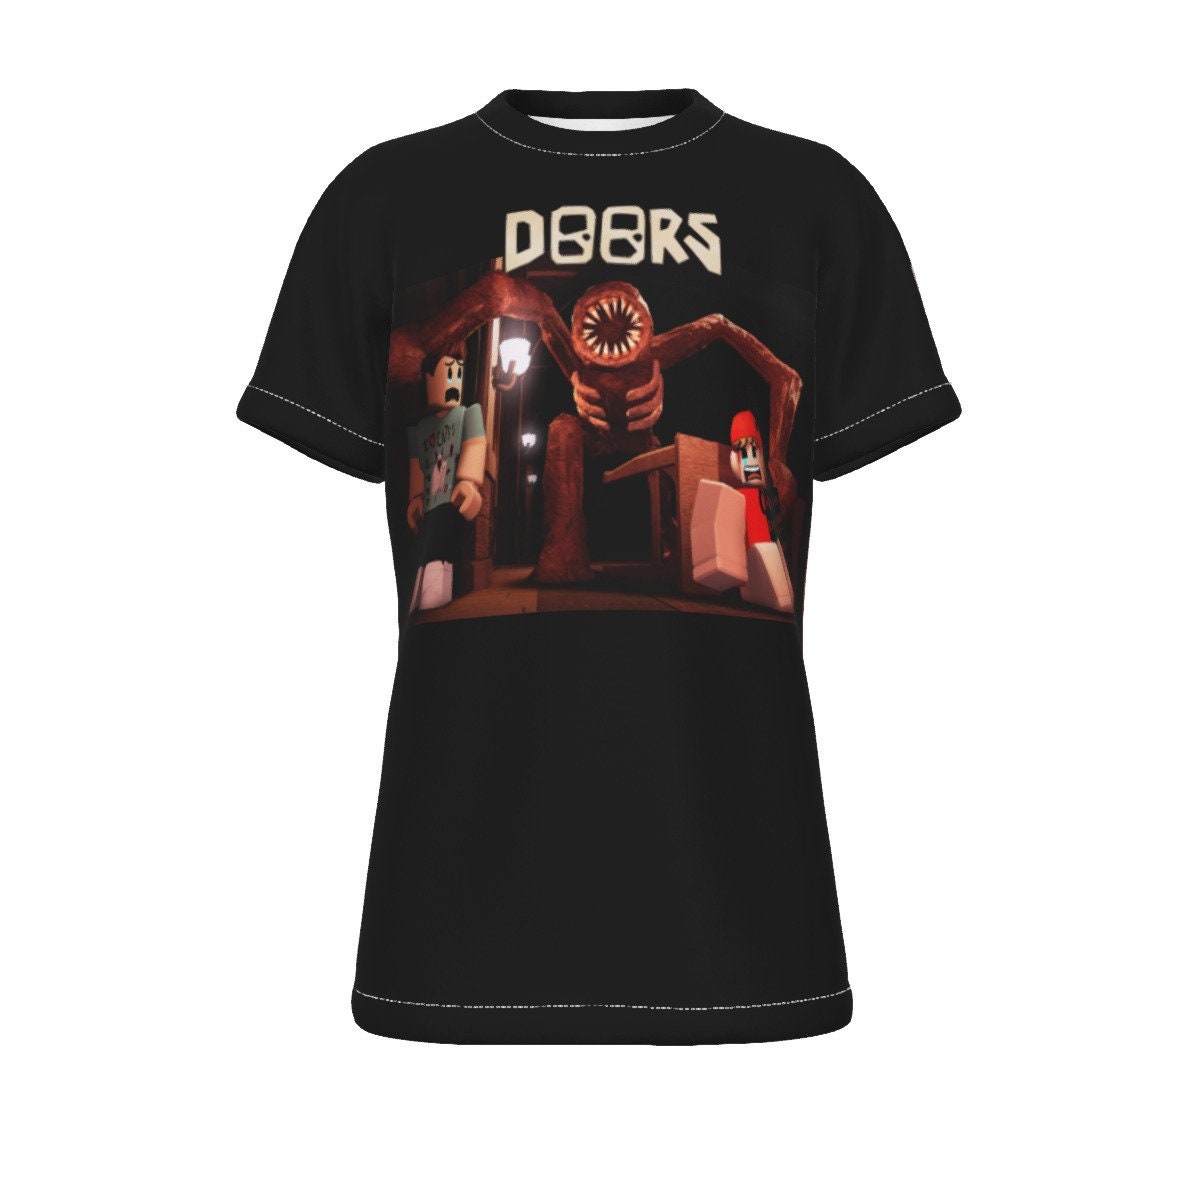 Roblox doors, all team  Essential T-Shirt by doorzz